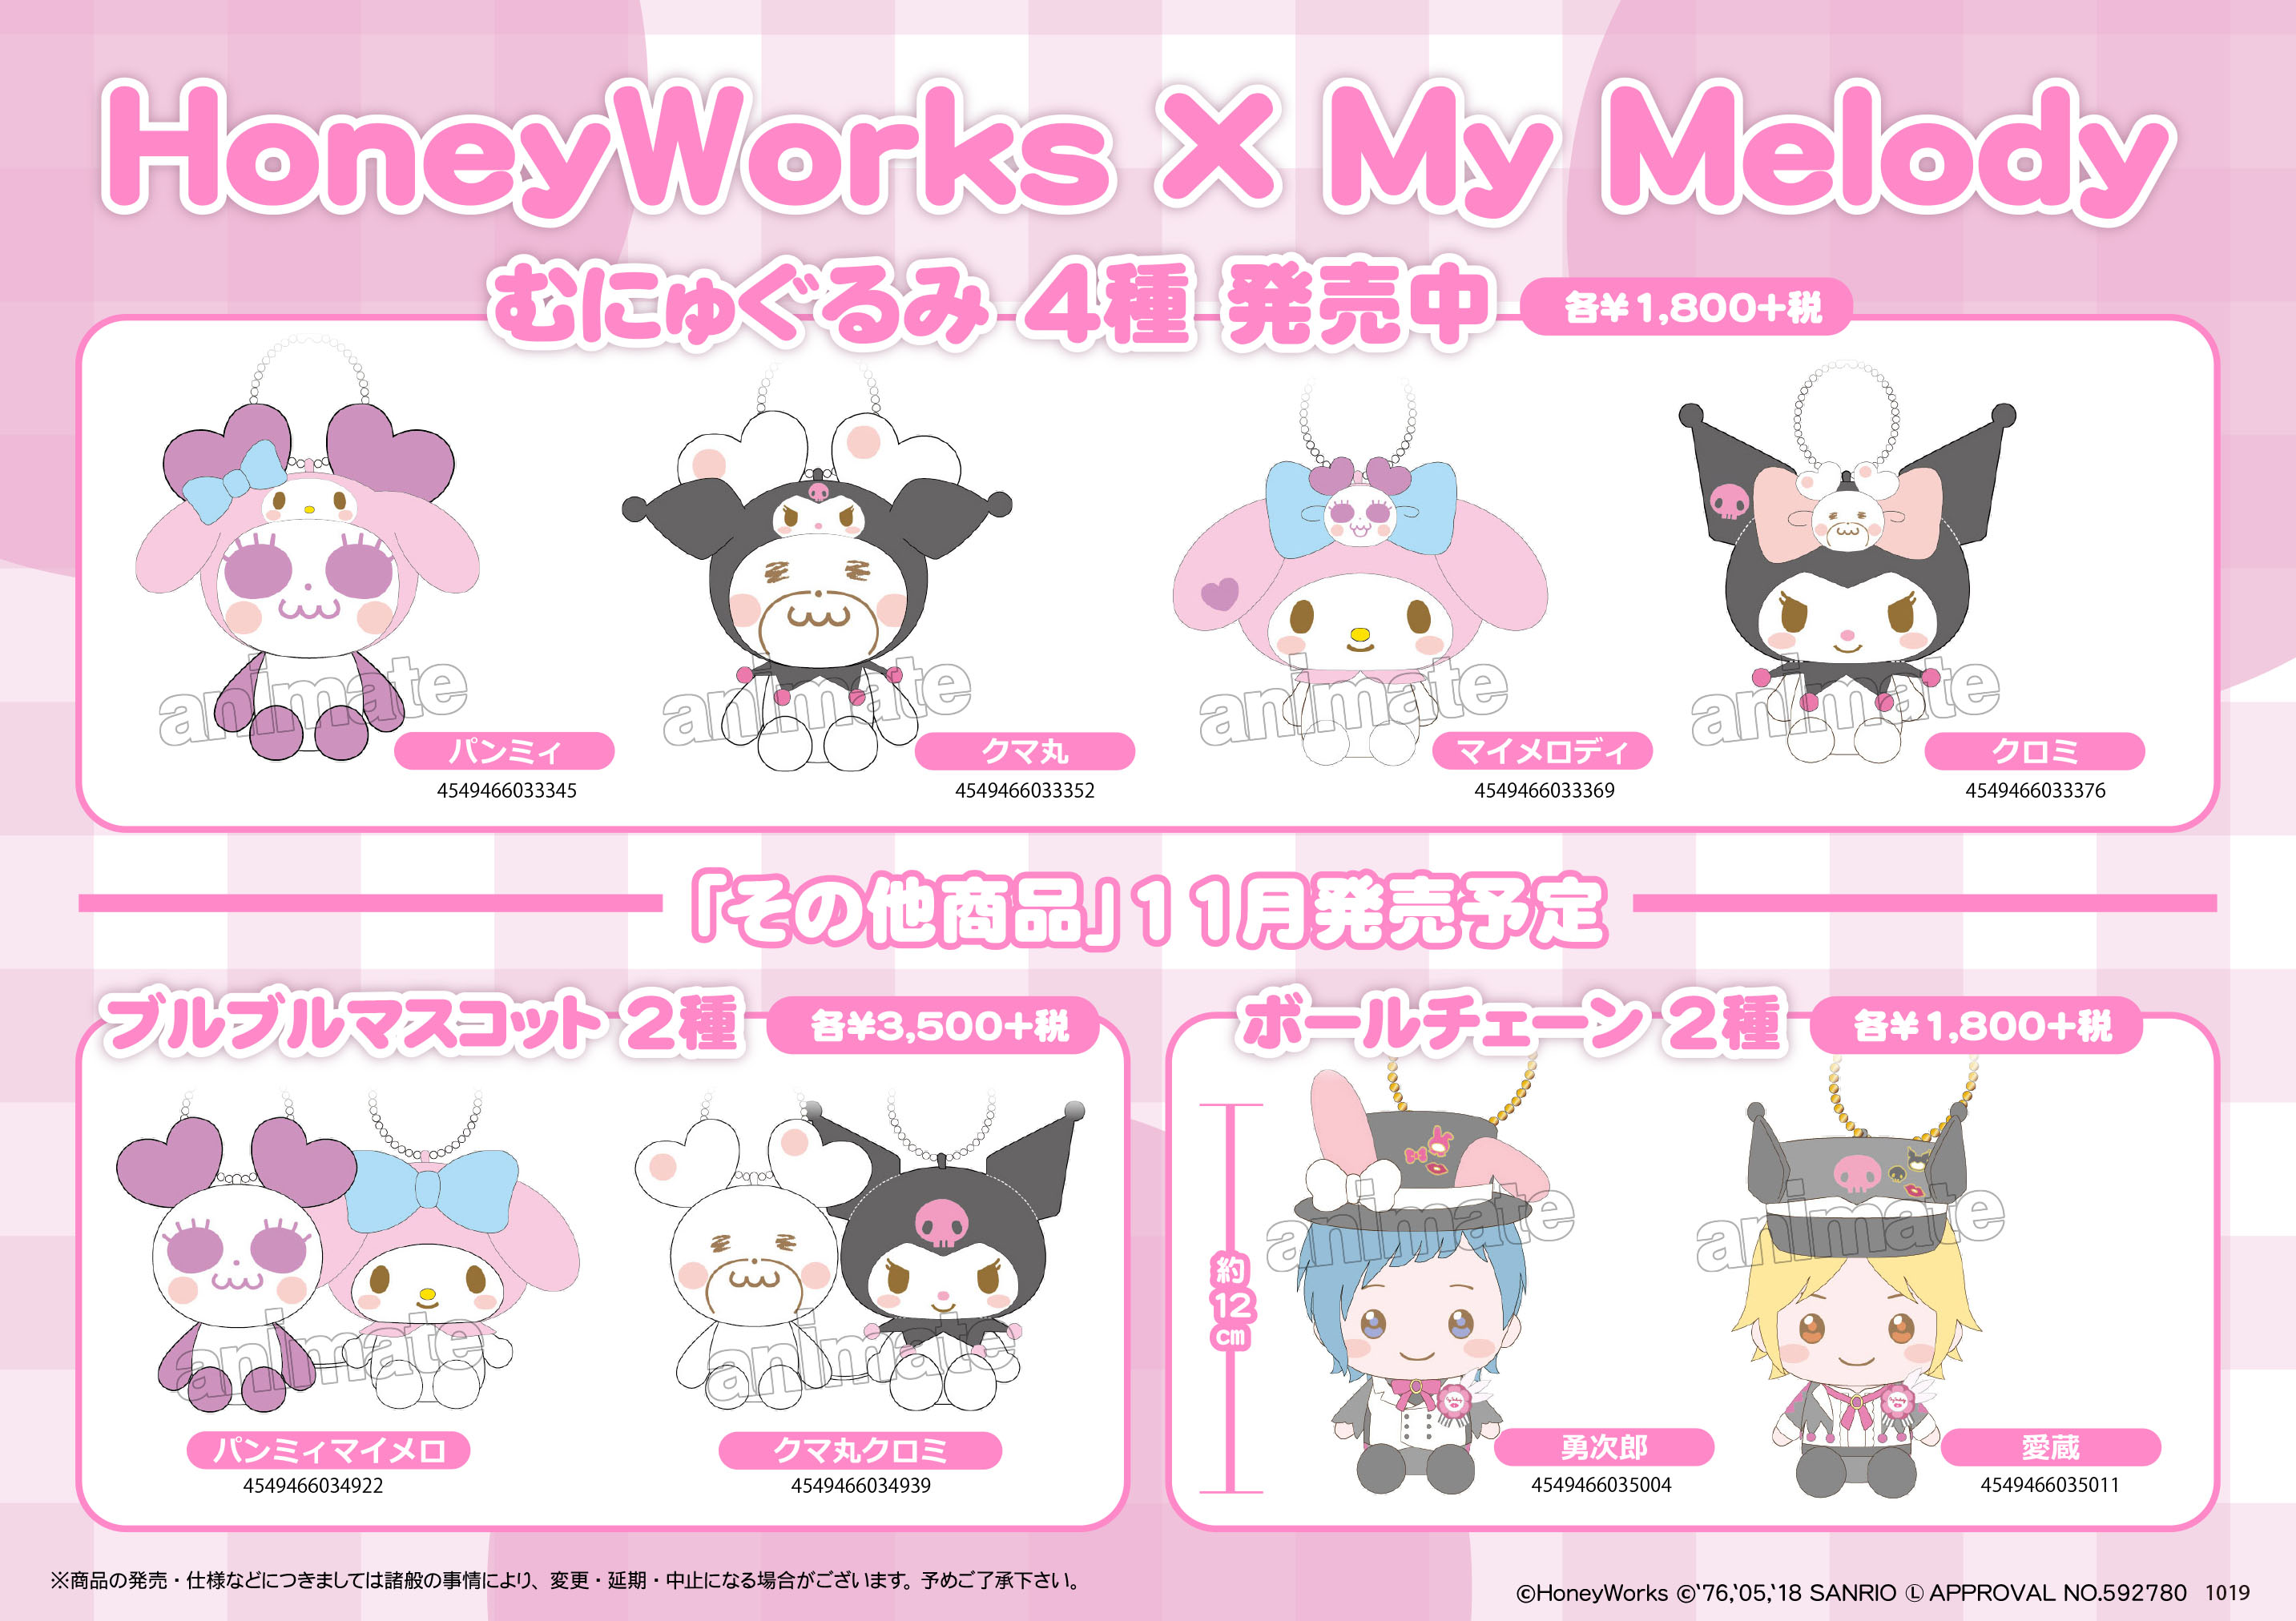 Honeyworks My Melody コラボグッズ発売情報 News Honeyworks Official Web Site